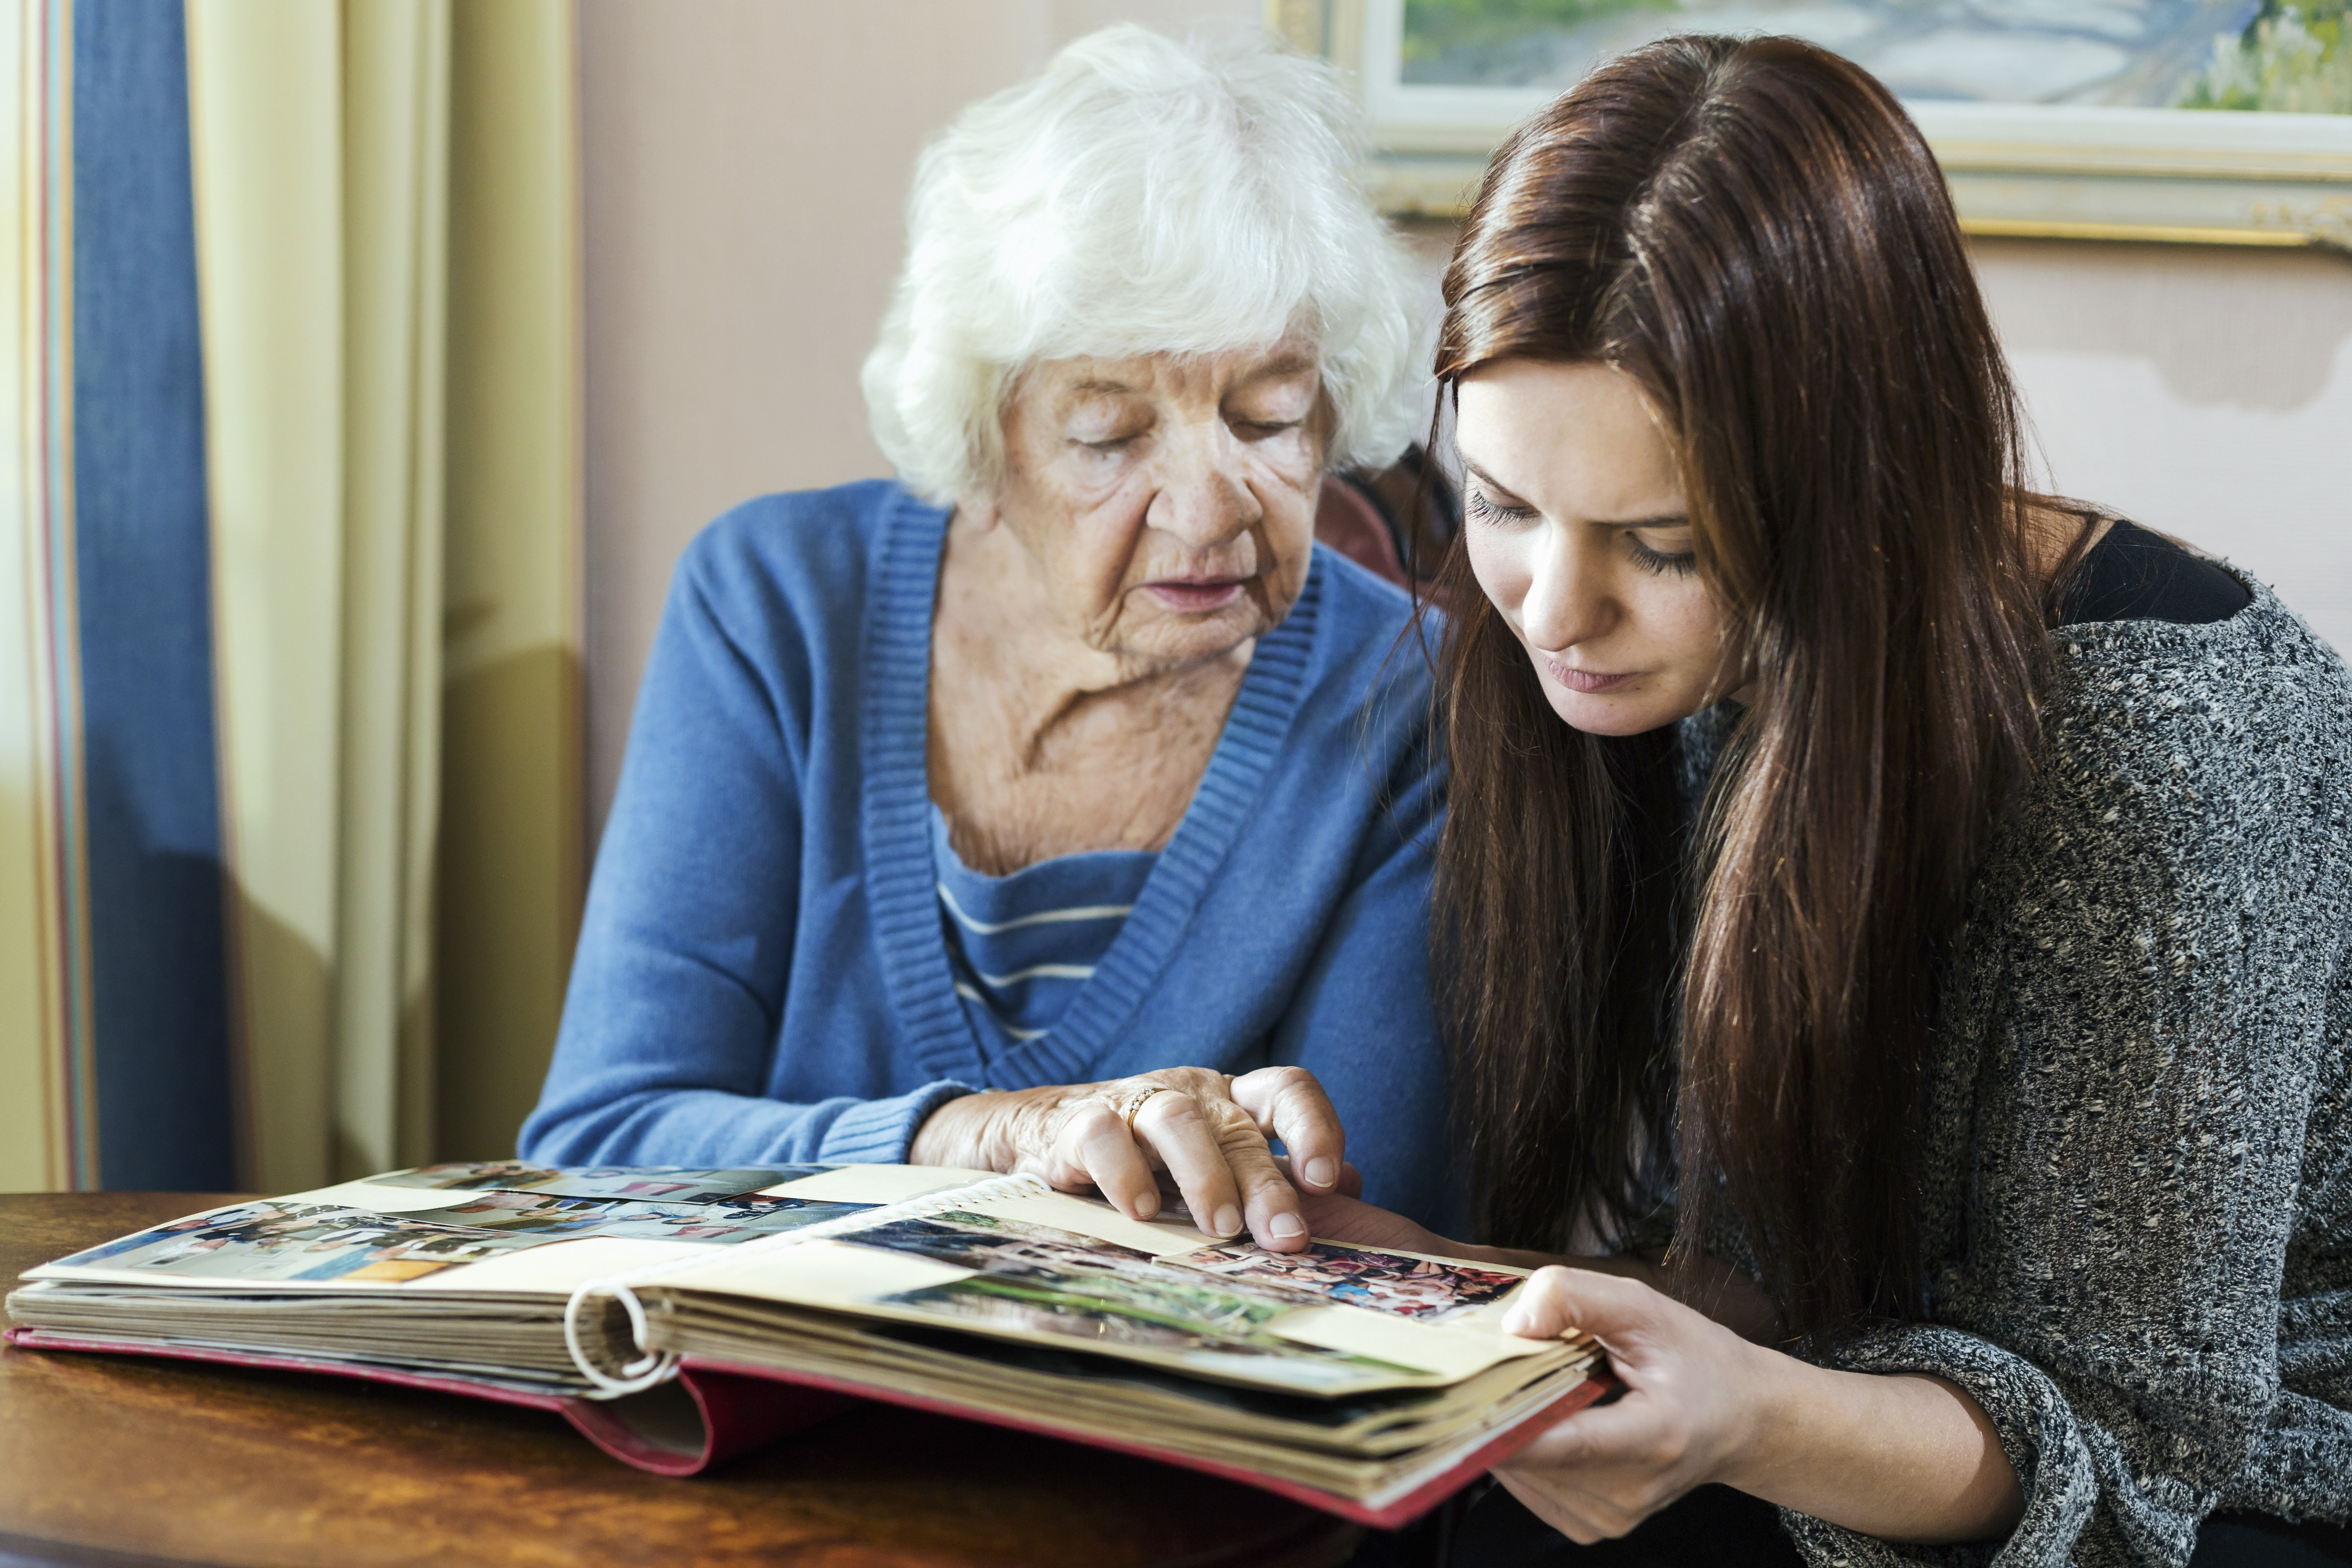 Großmutter und Enkelin betrachten ein Fotoalbum im Haus | Quelle: Getty Images